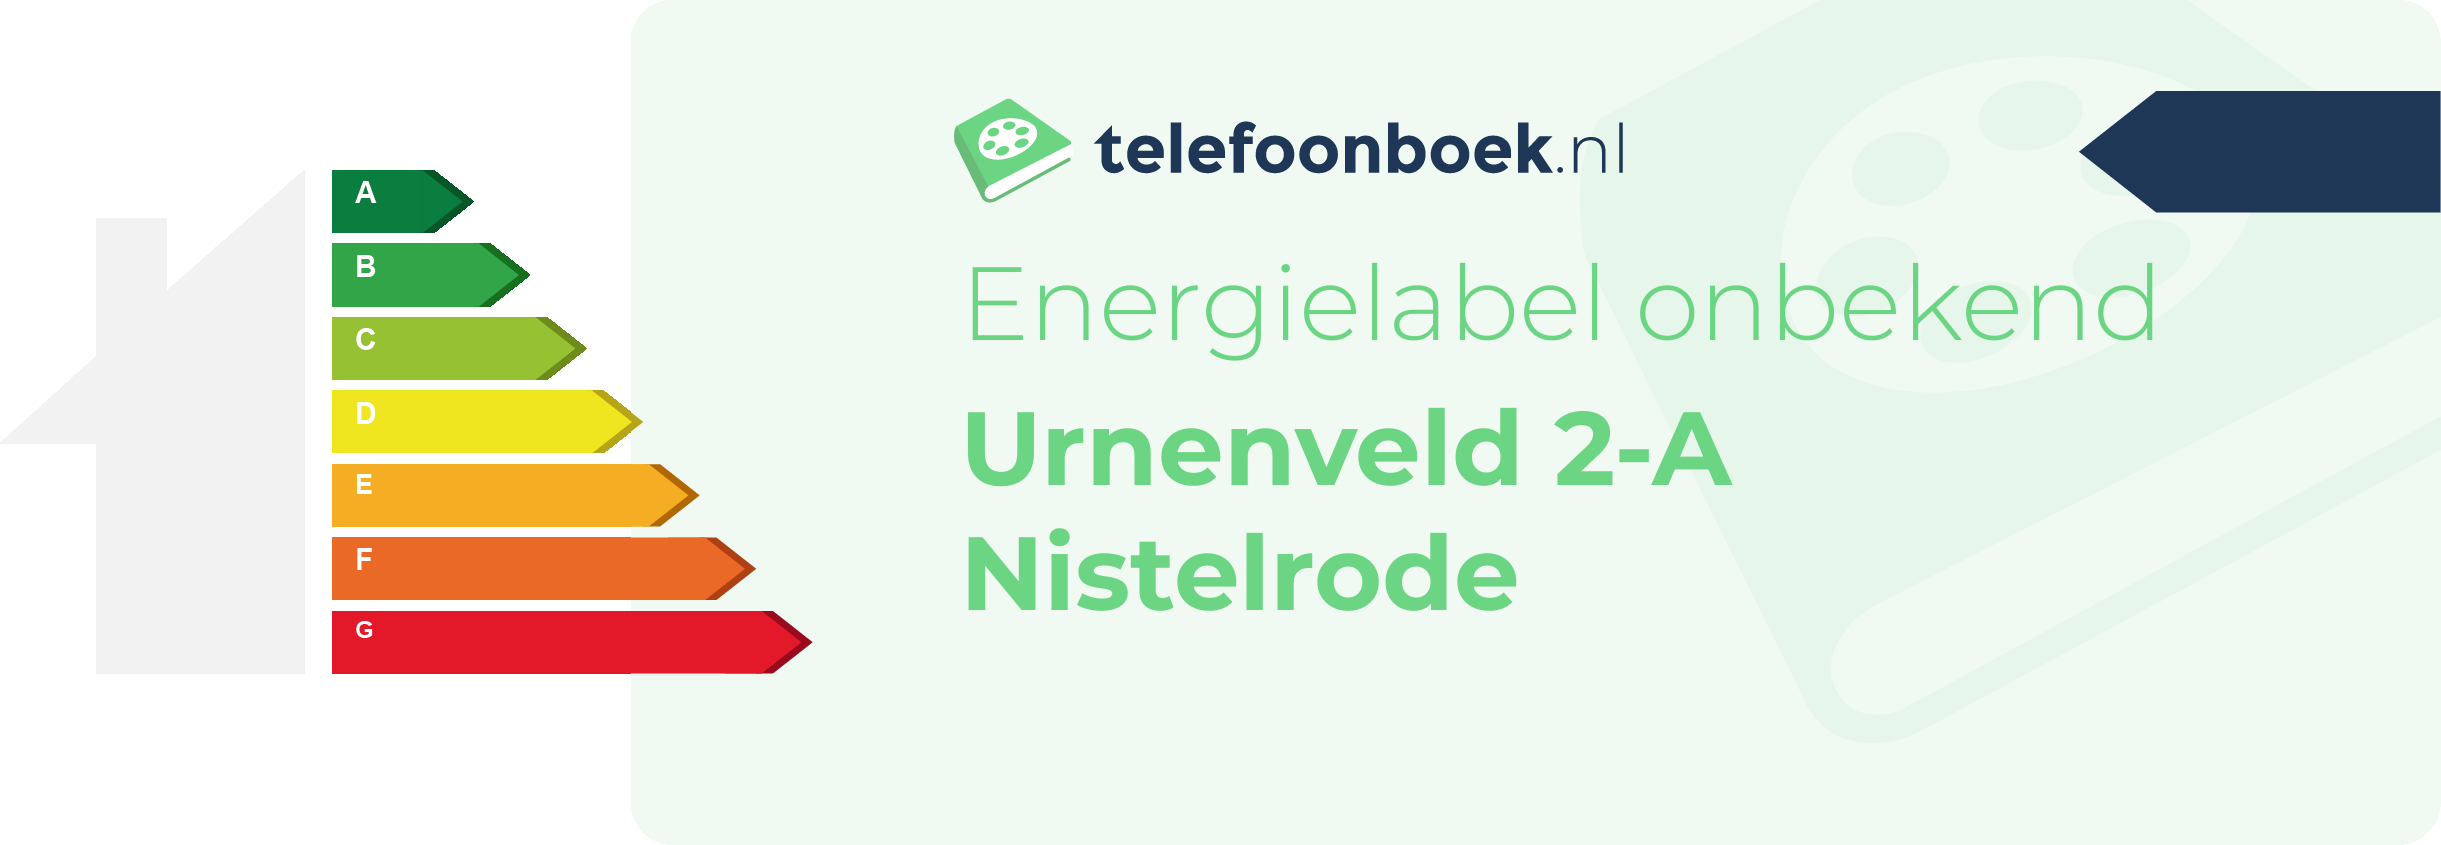 Energielabel Urnenveld 2-A Nistelrode